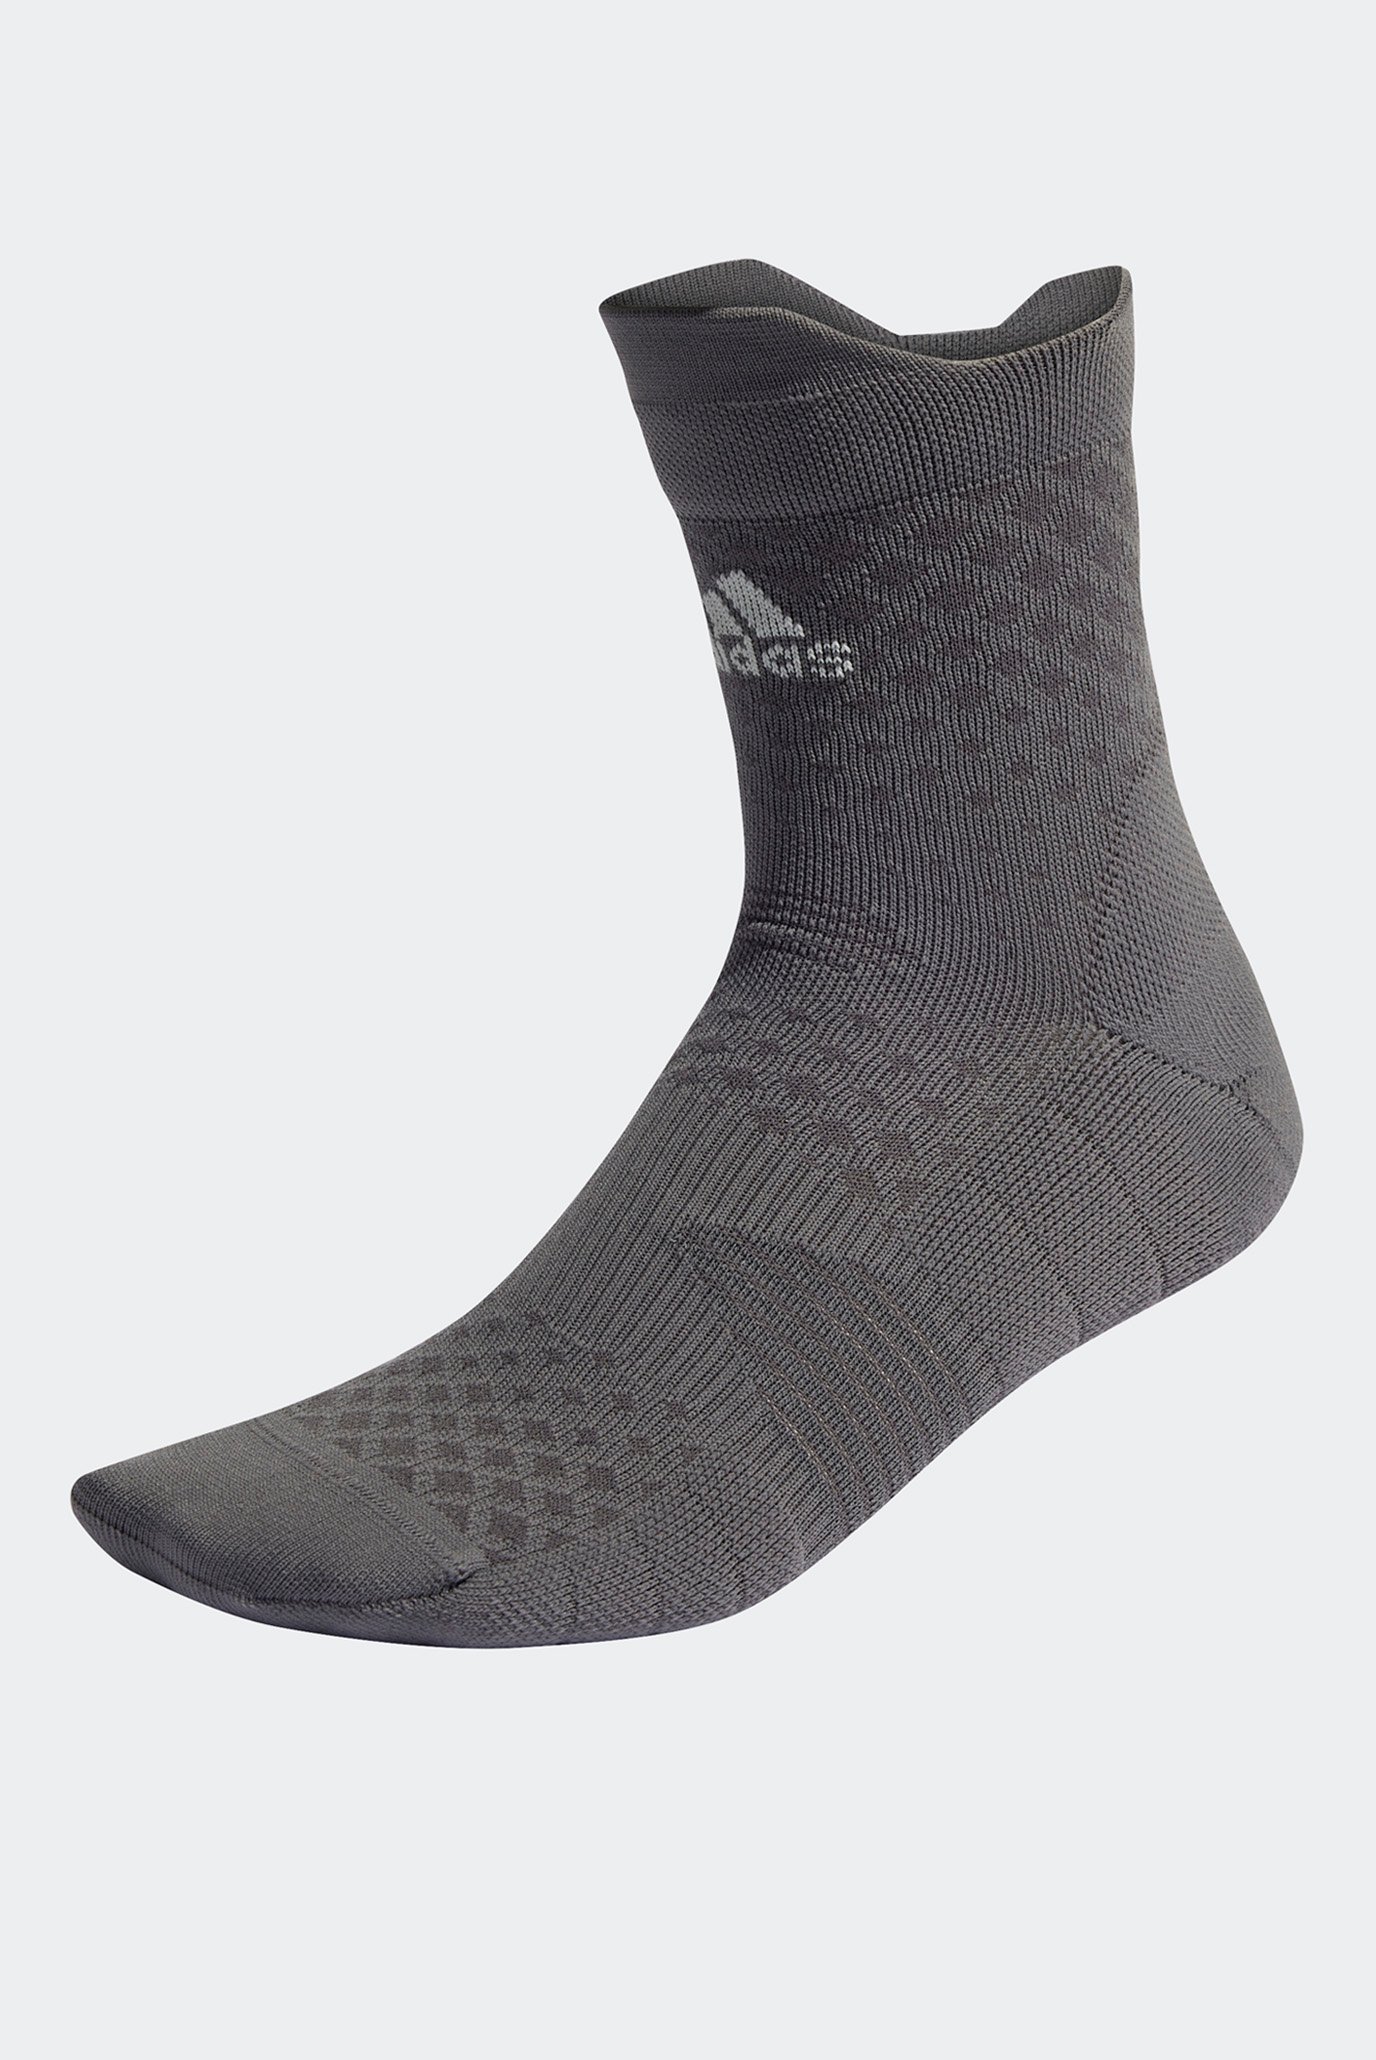 Сірі шкарпетки adidas 4D Quarter 1